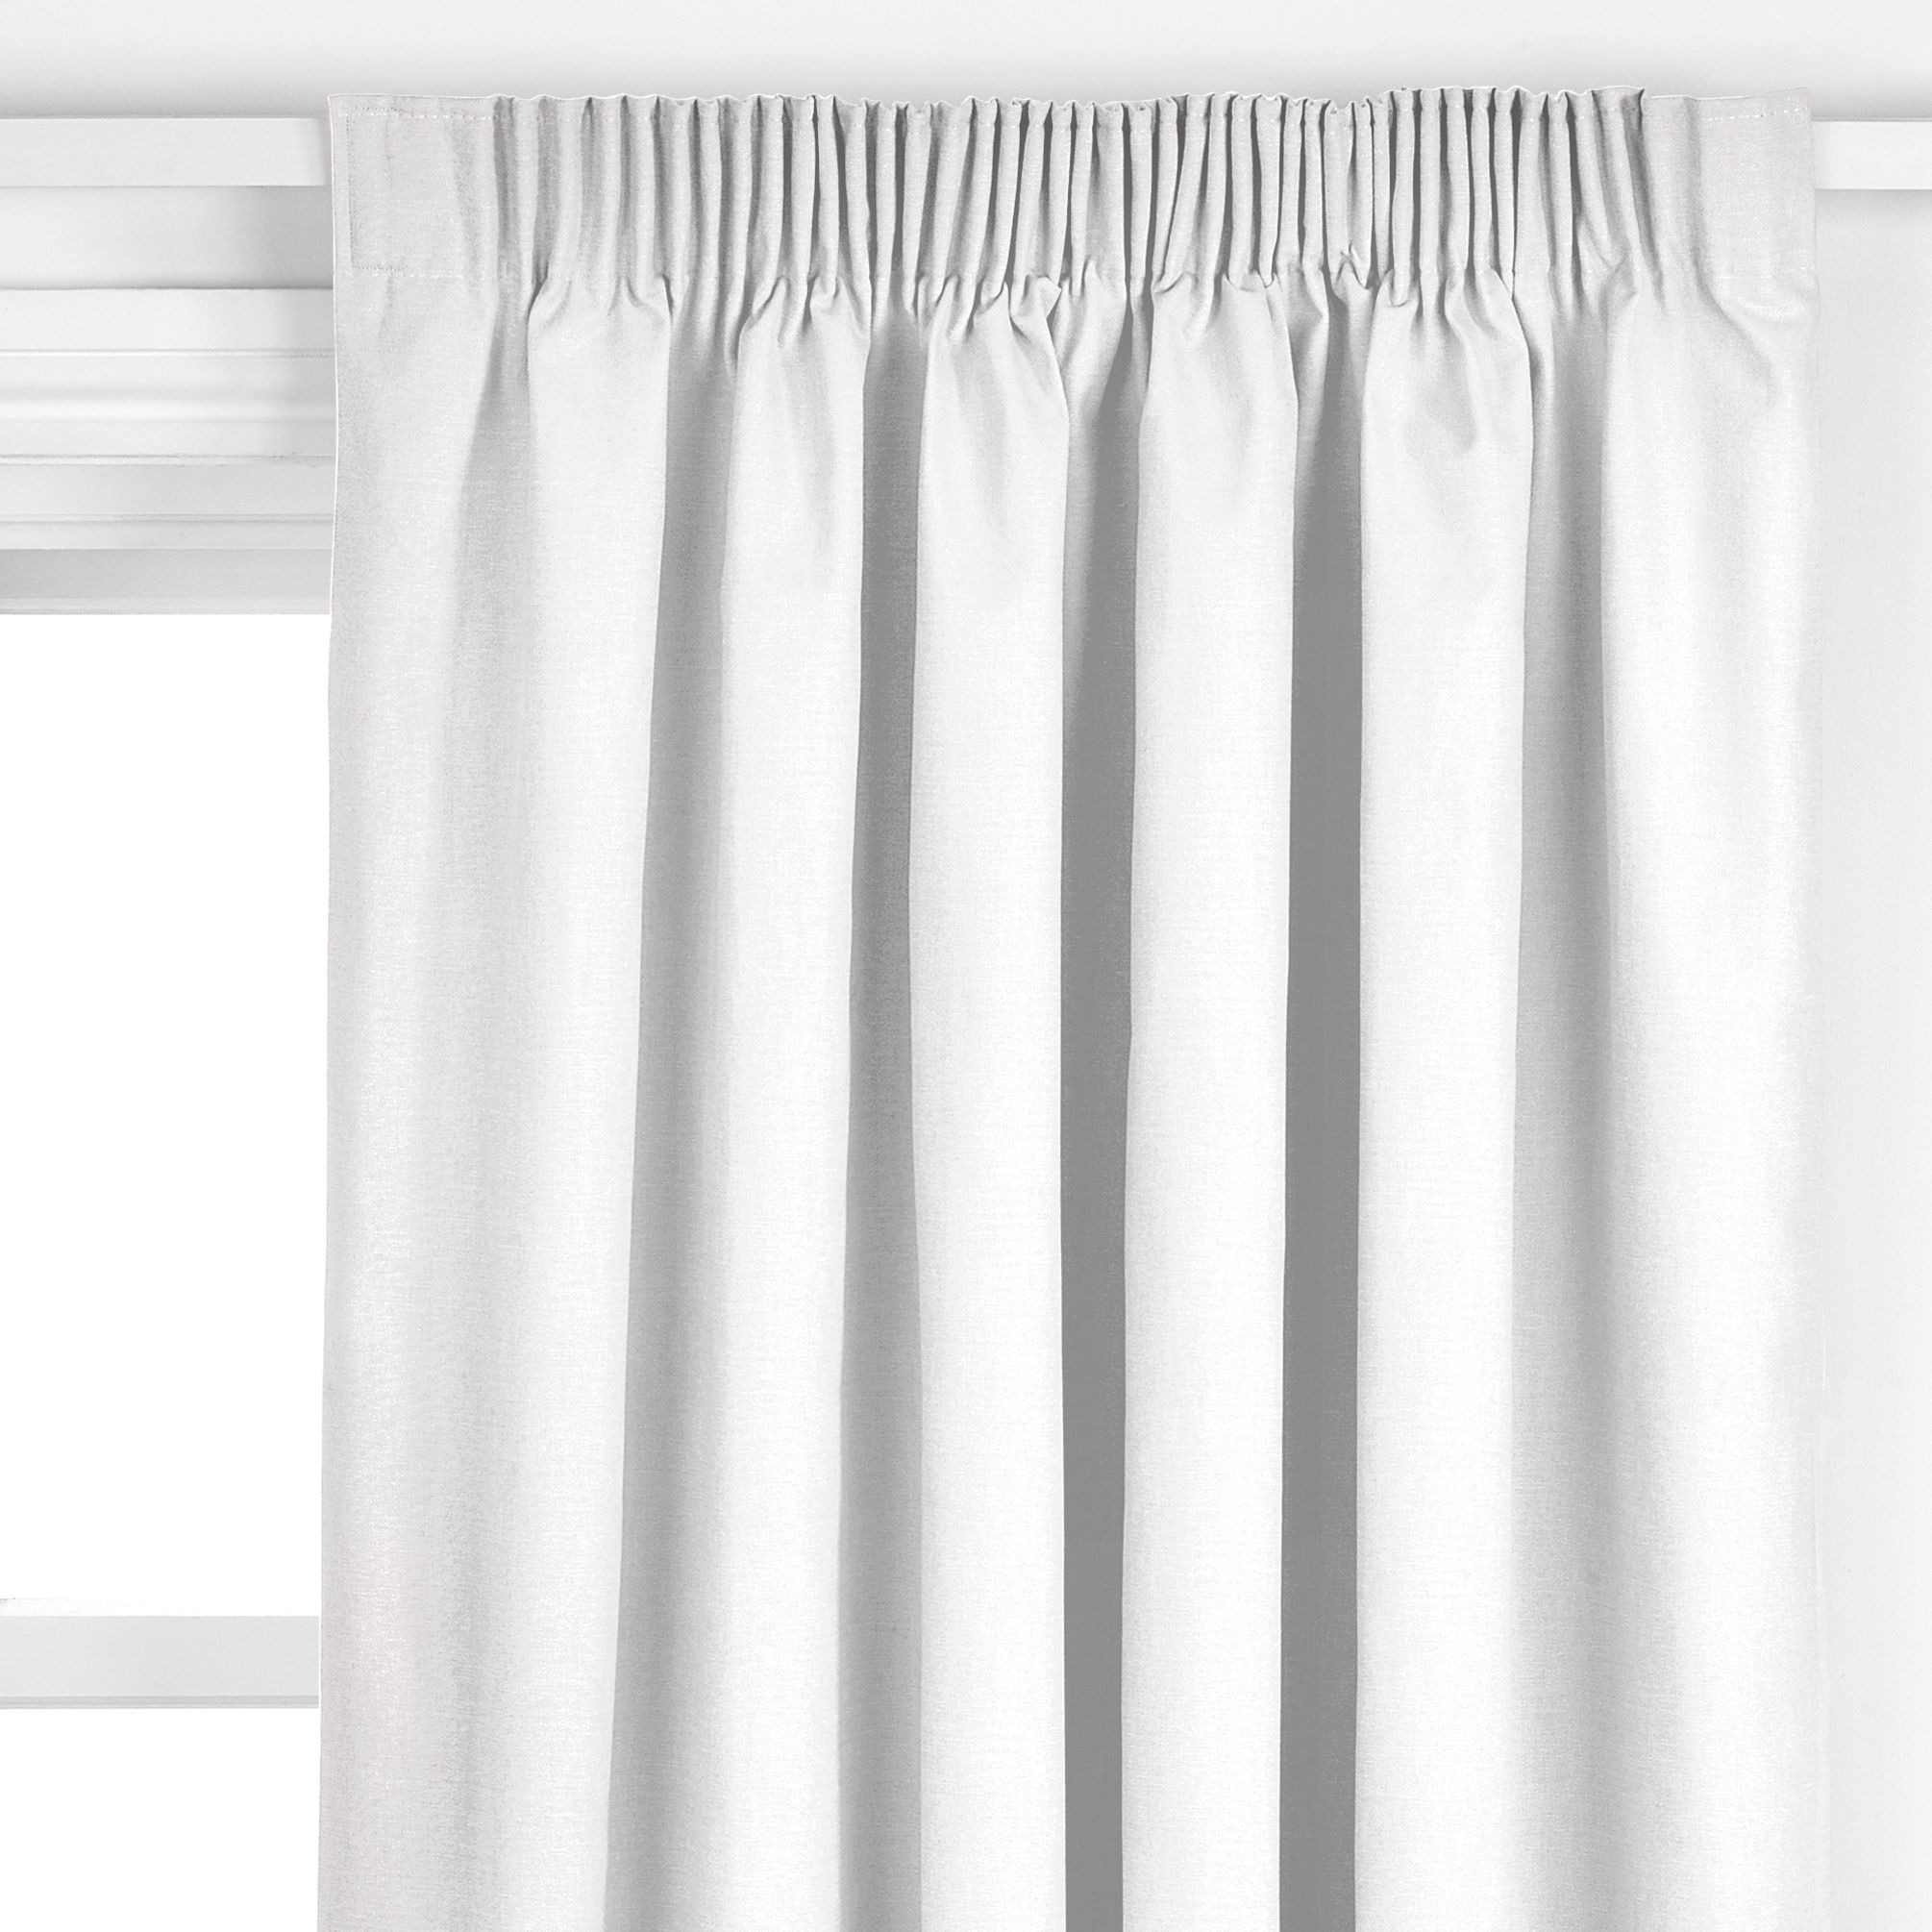 Plain Linen Pencil Pleat Curtains,